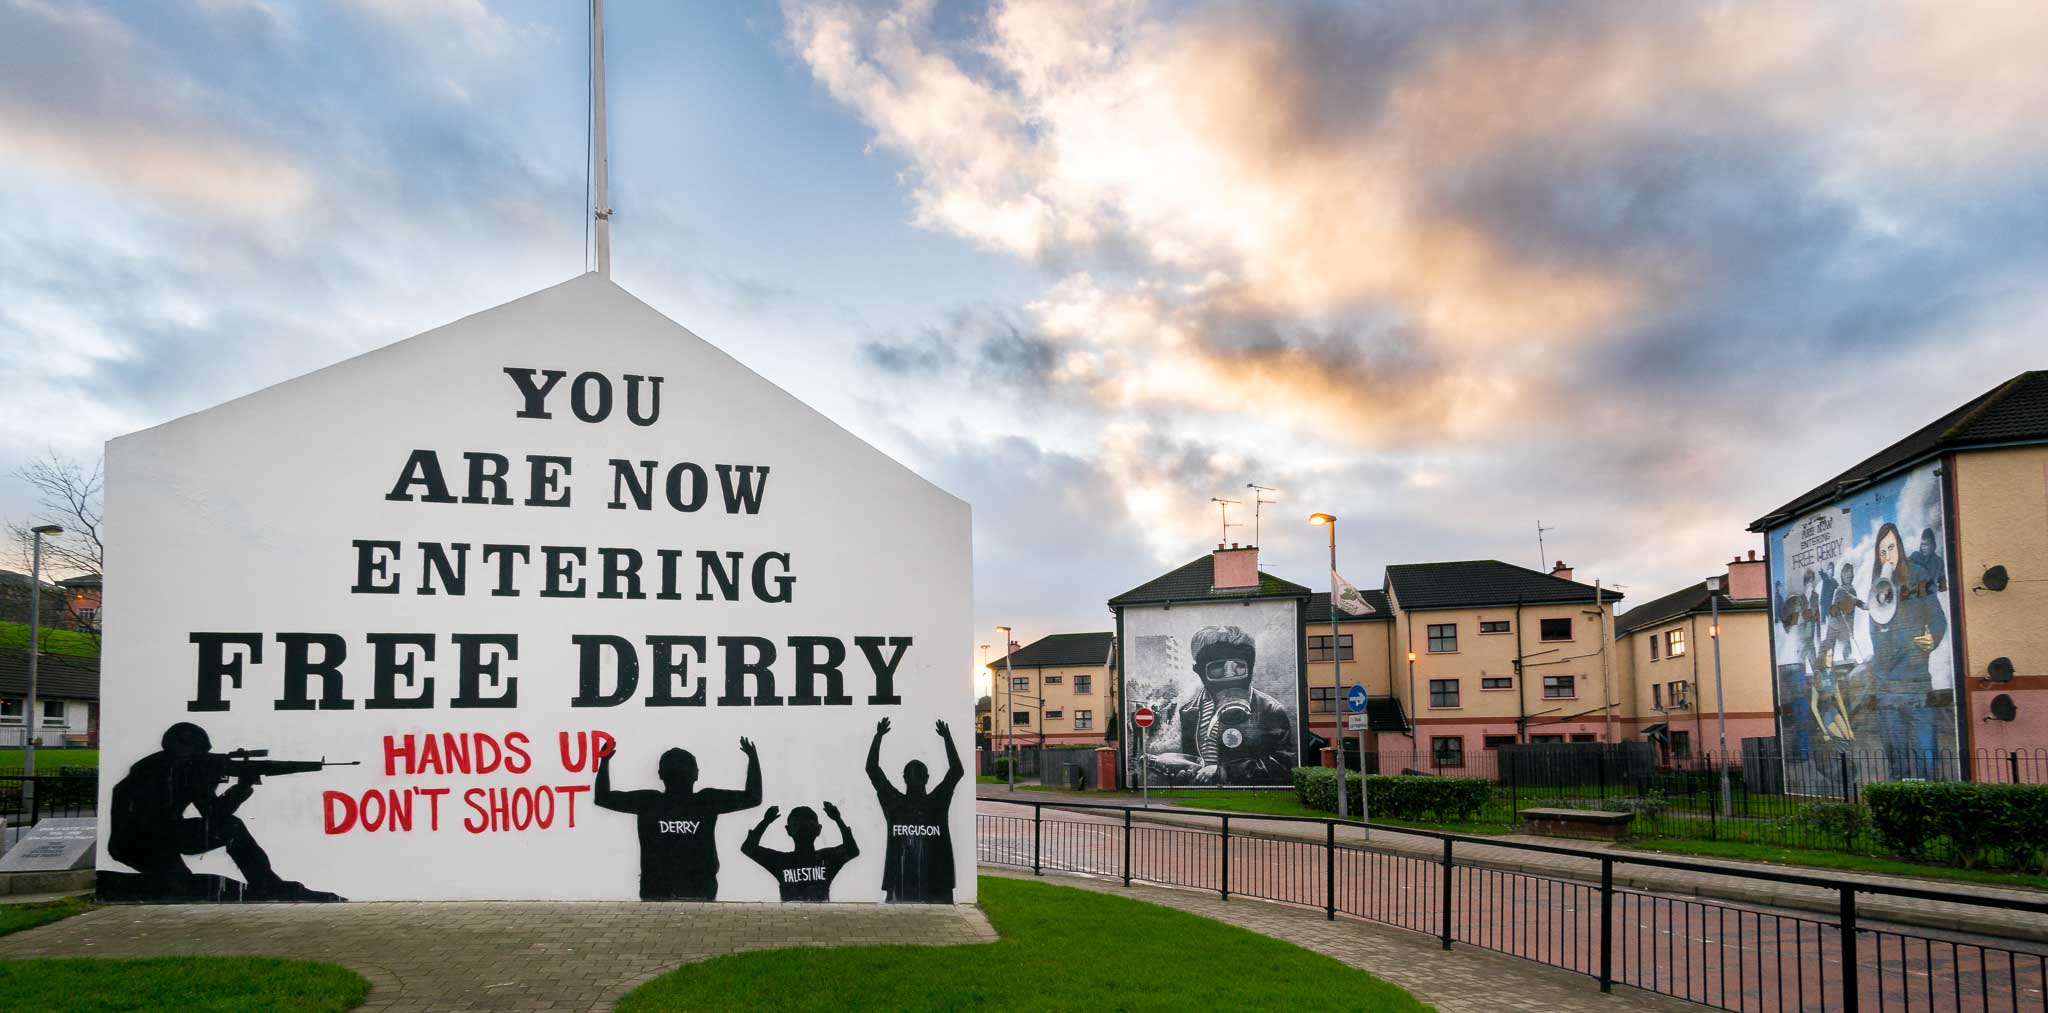 Free Derry corner, Northern Ireland